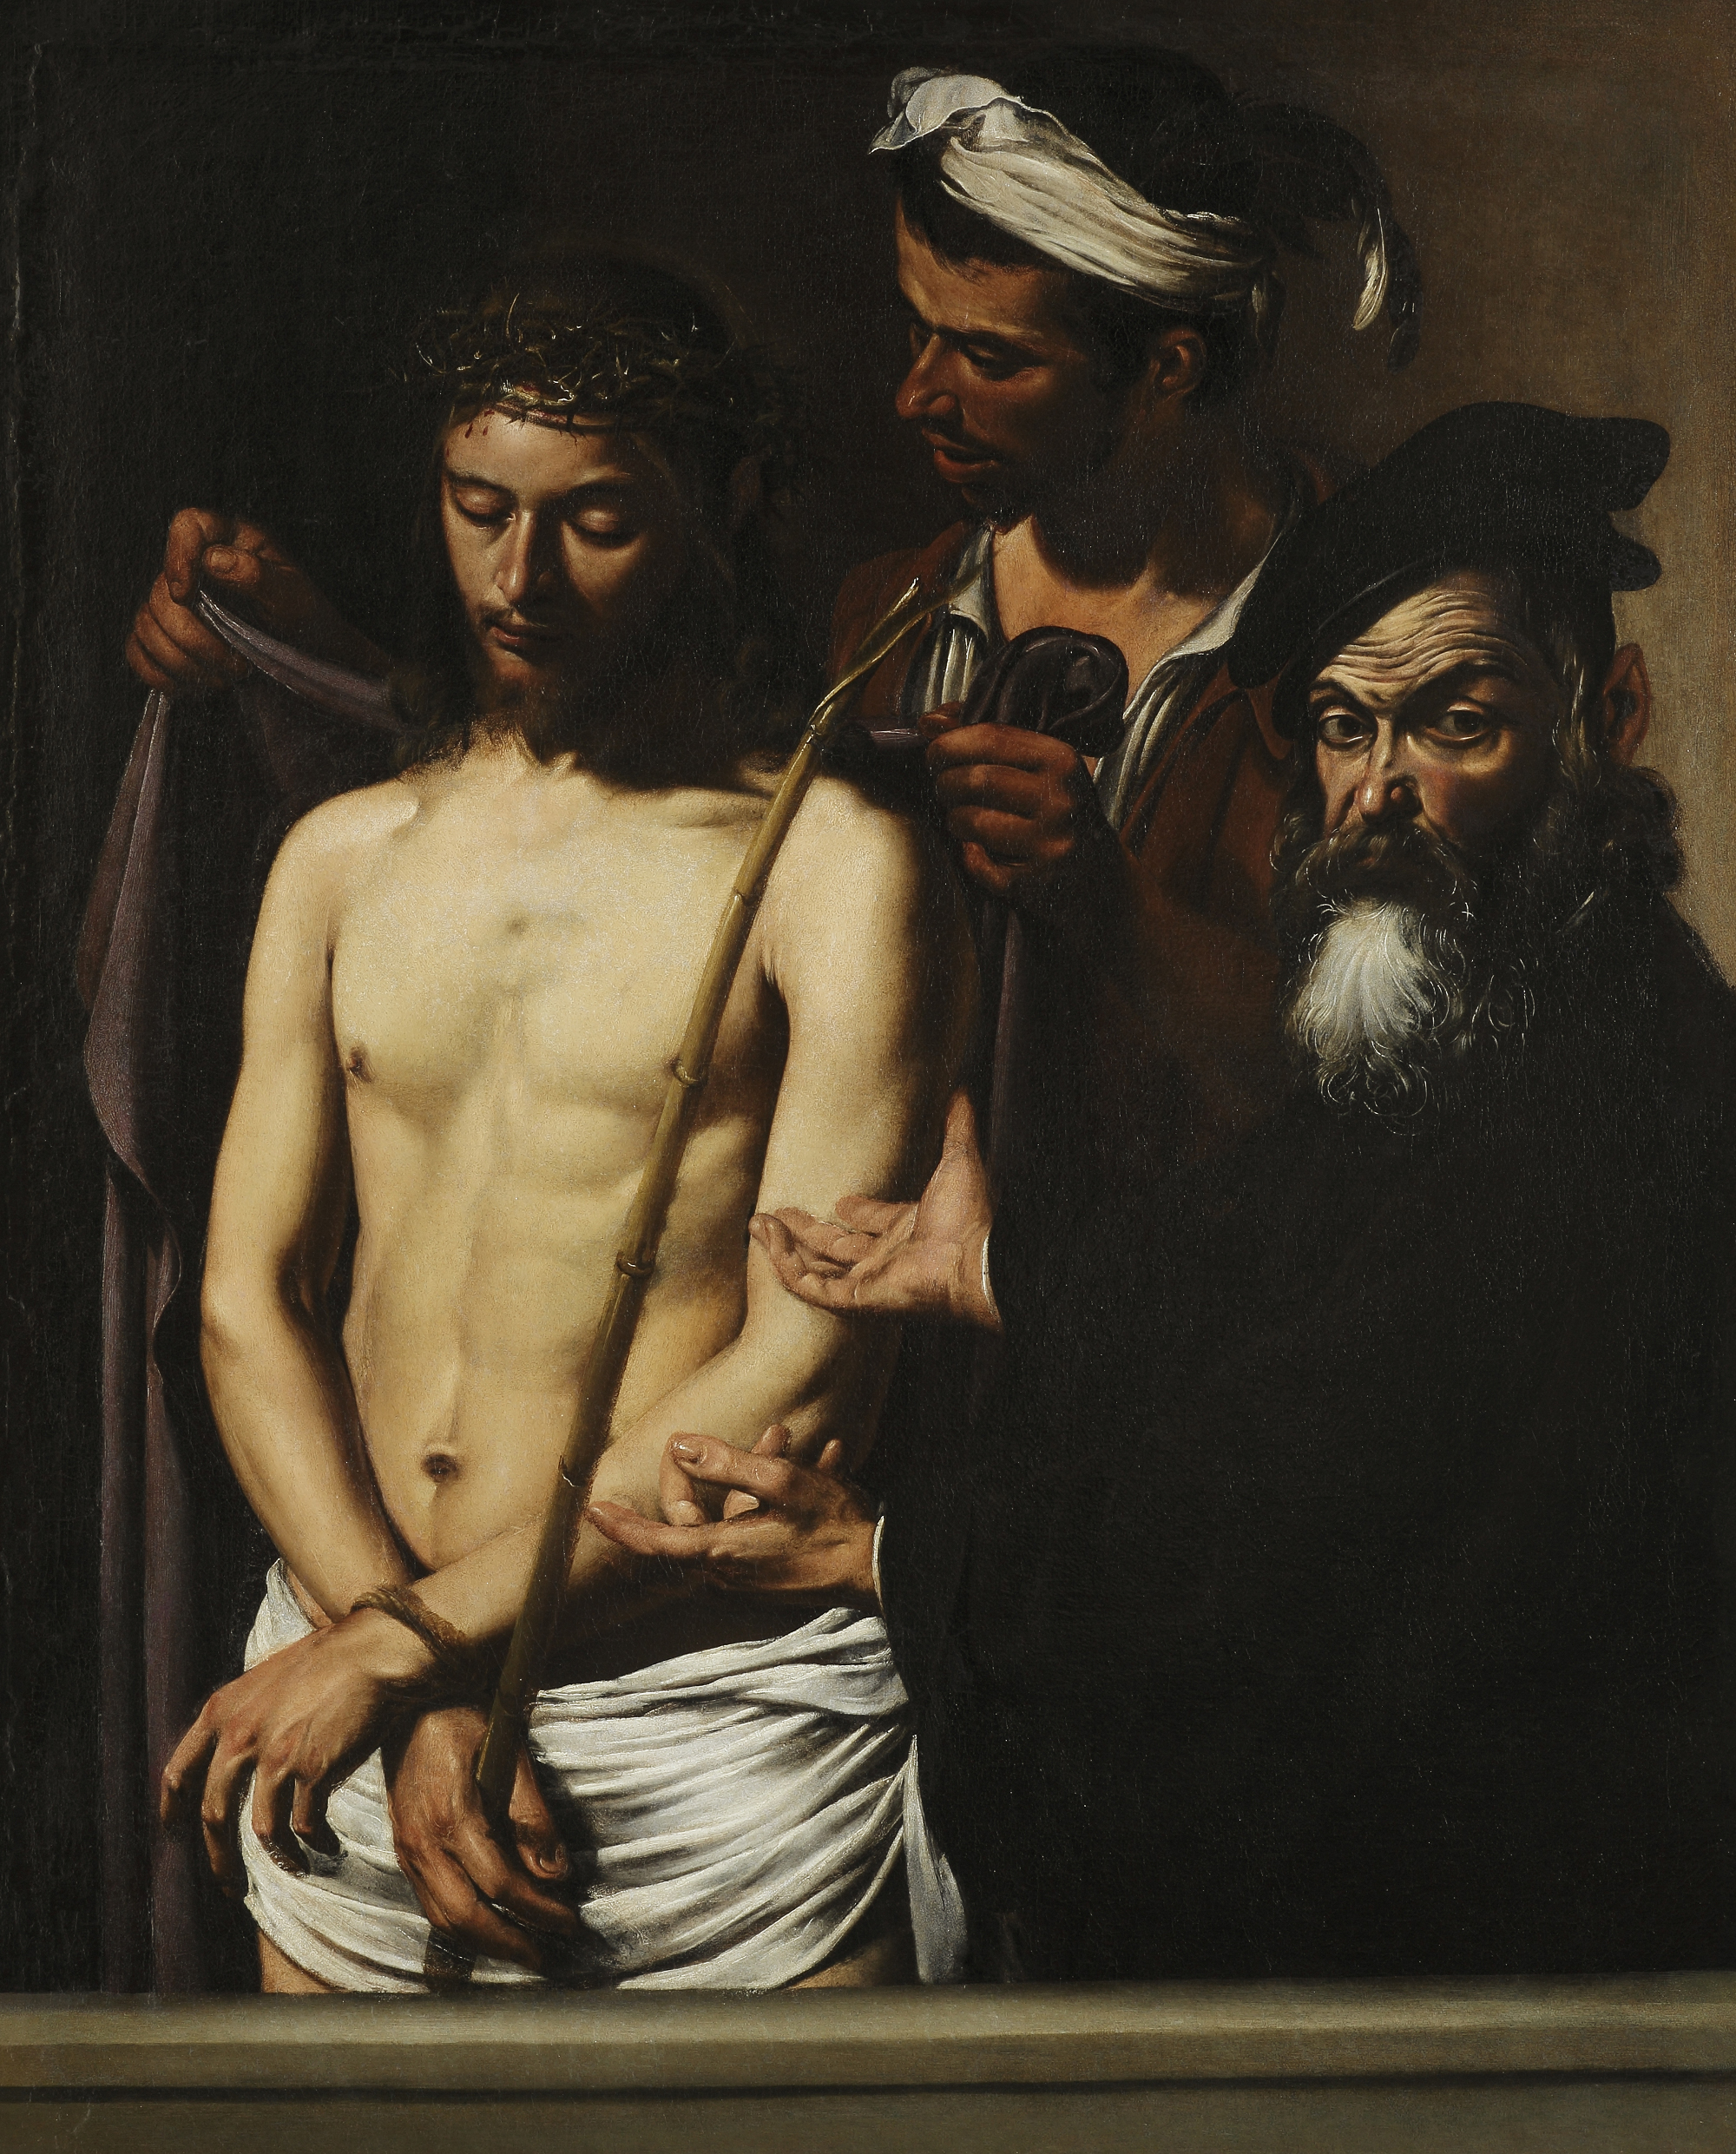  Caravaggio "Ecce Homo"  ph: Visconti 2011